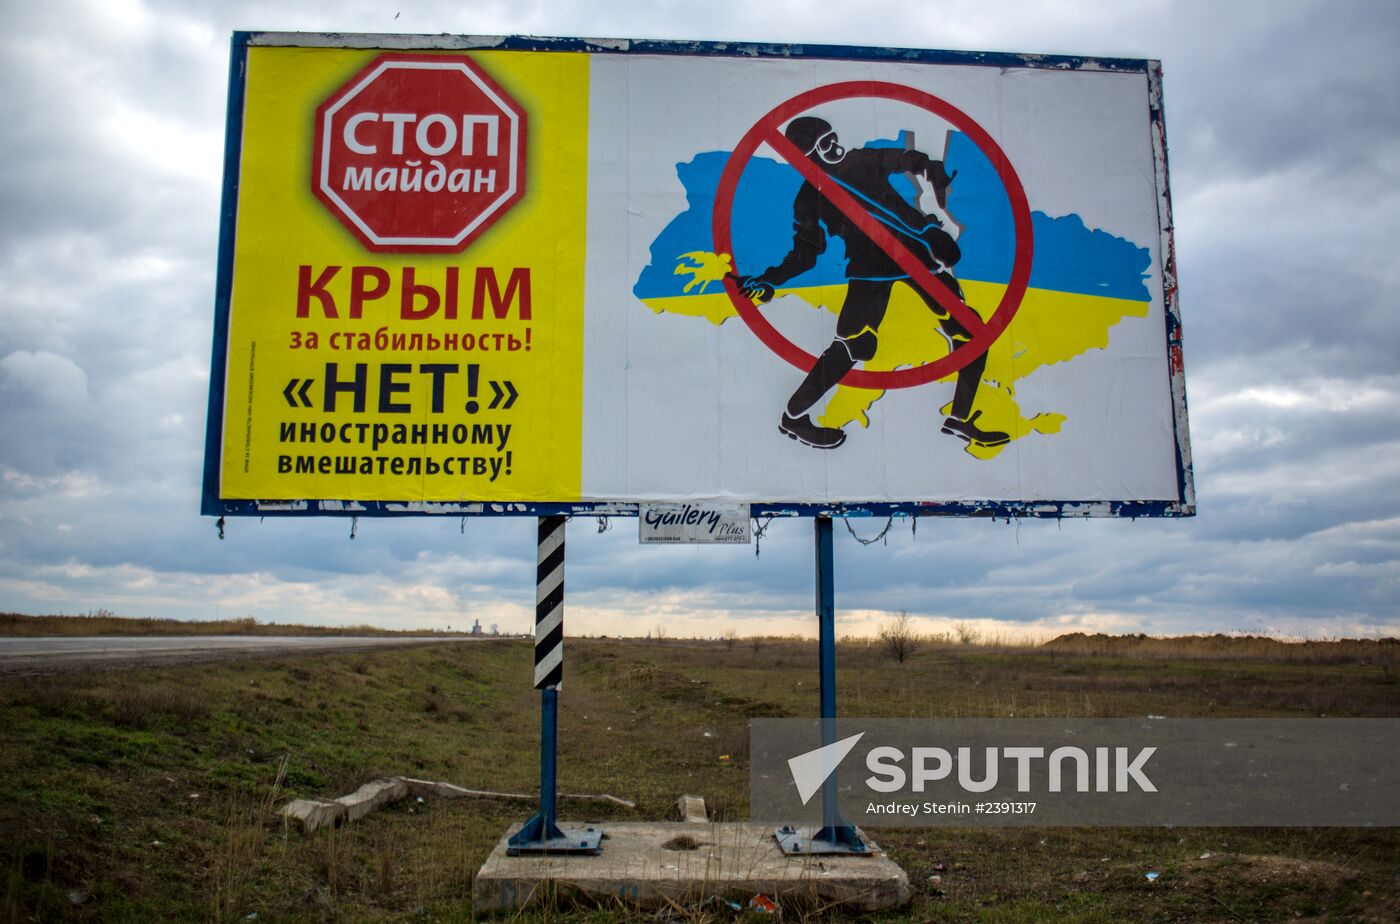 Billboards in Ukraine